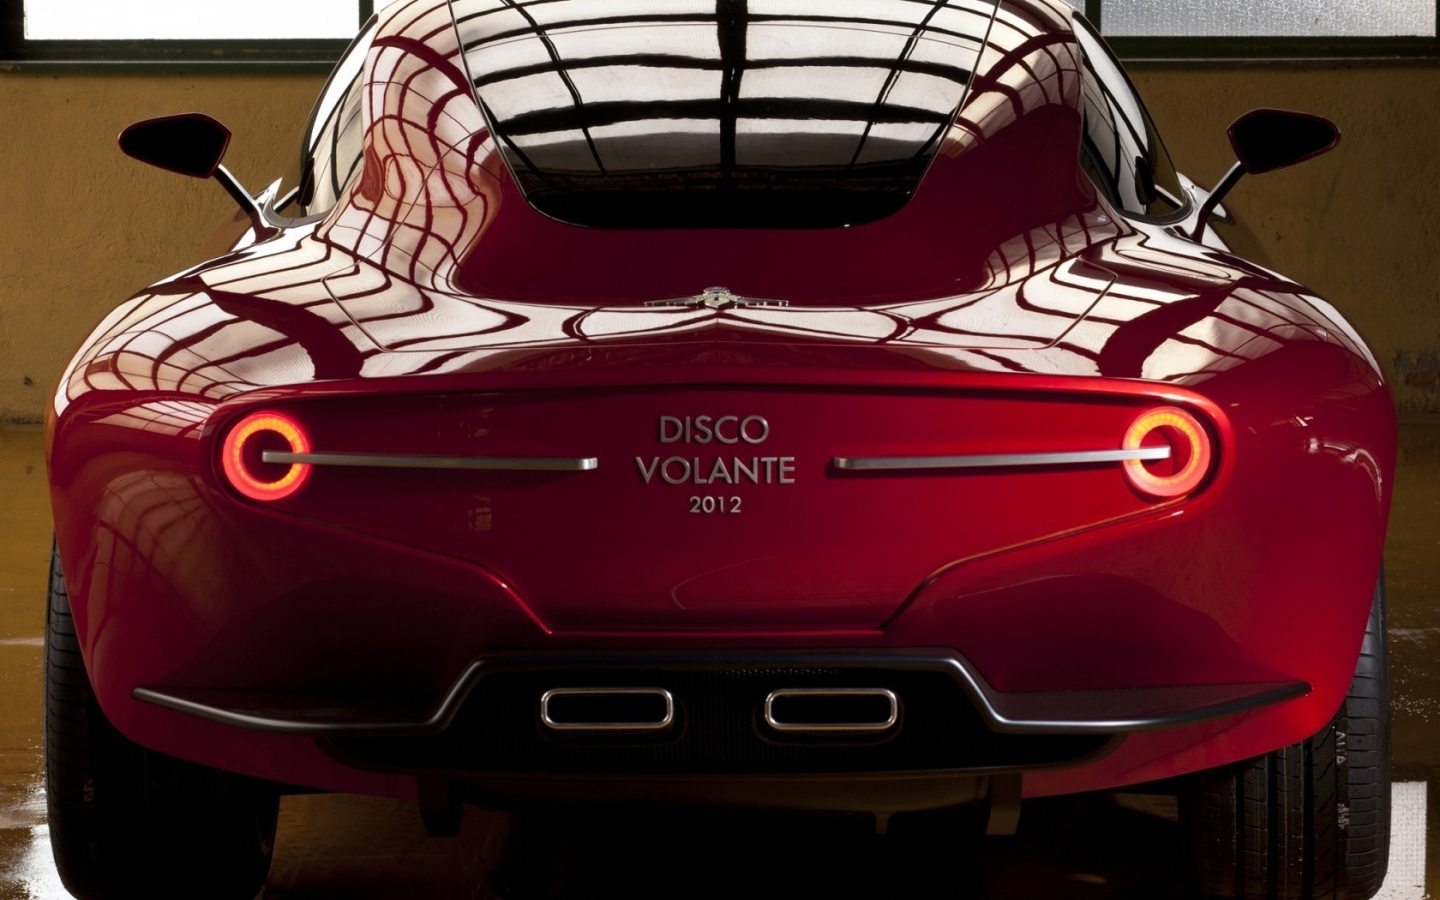 Alfa Romeo Disco Volante 2012 for 1440 x 900 widescreen resolution